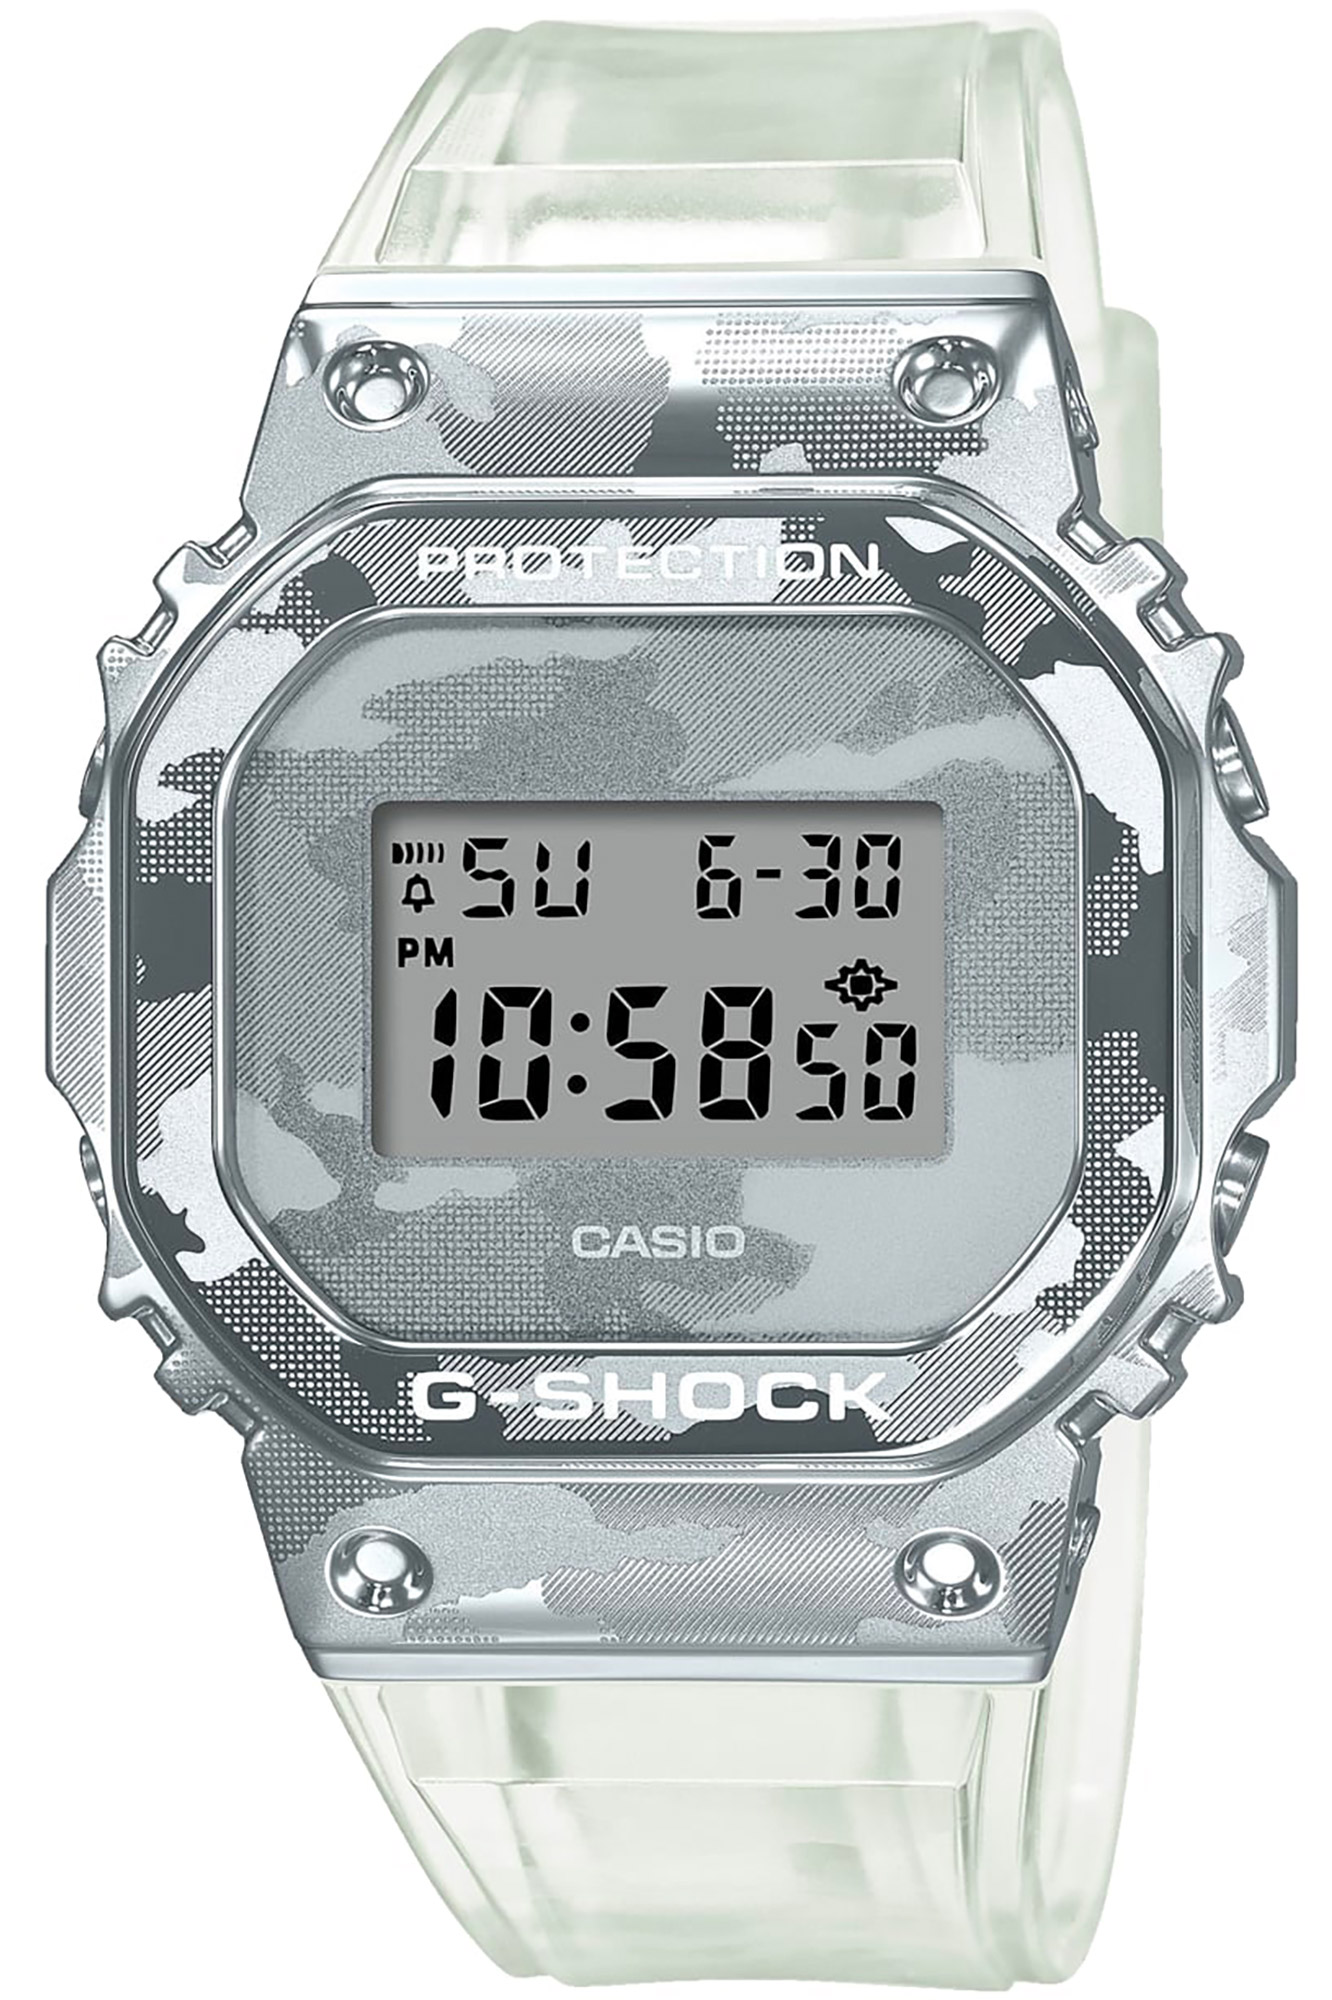 Uhr CASIO G-Shock gm-5600scm-1er